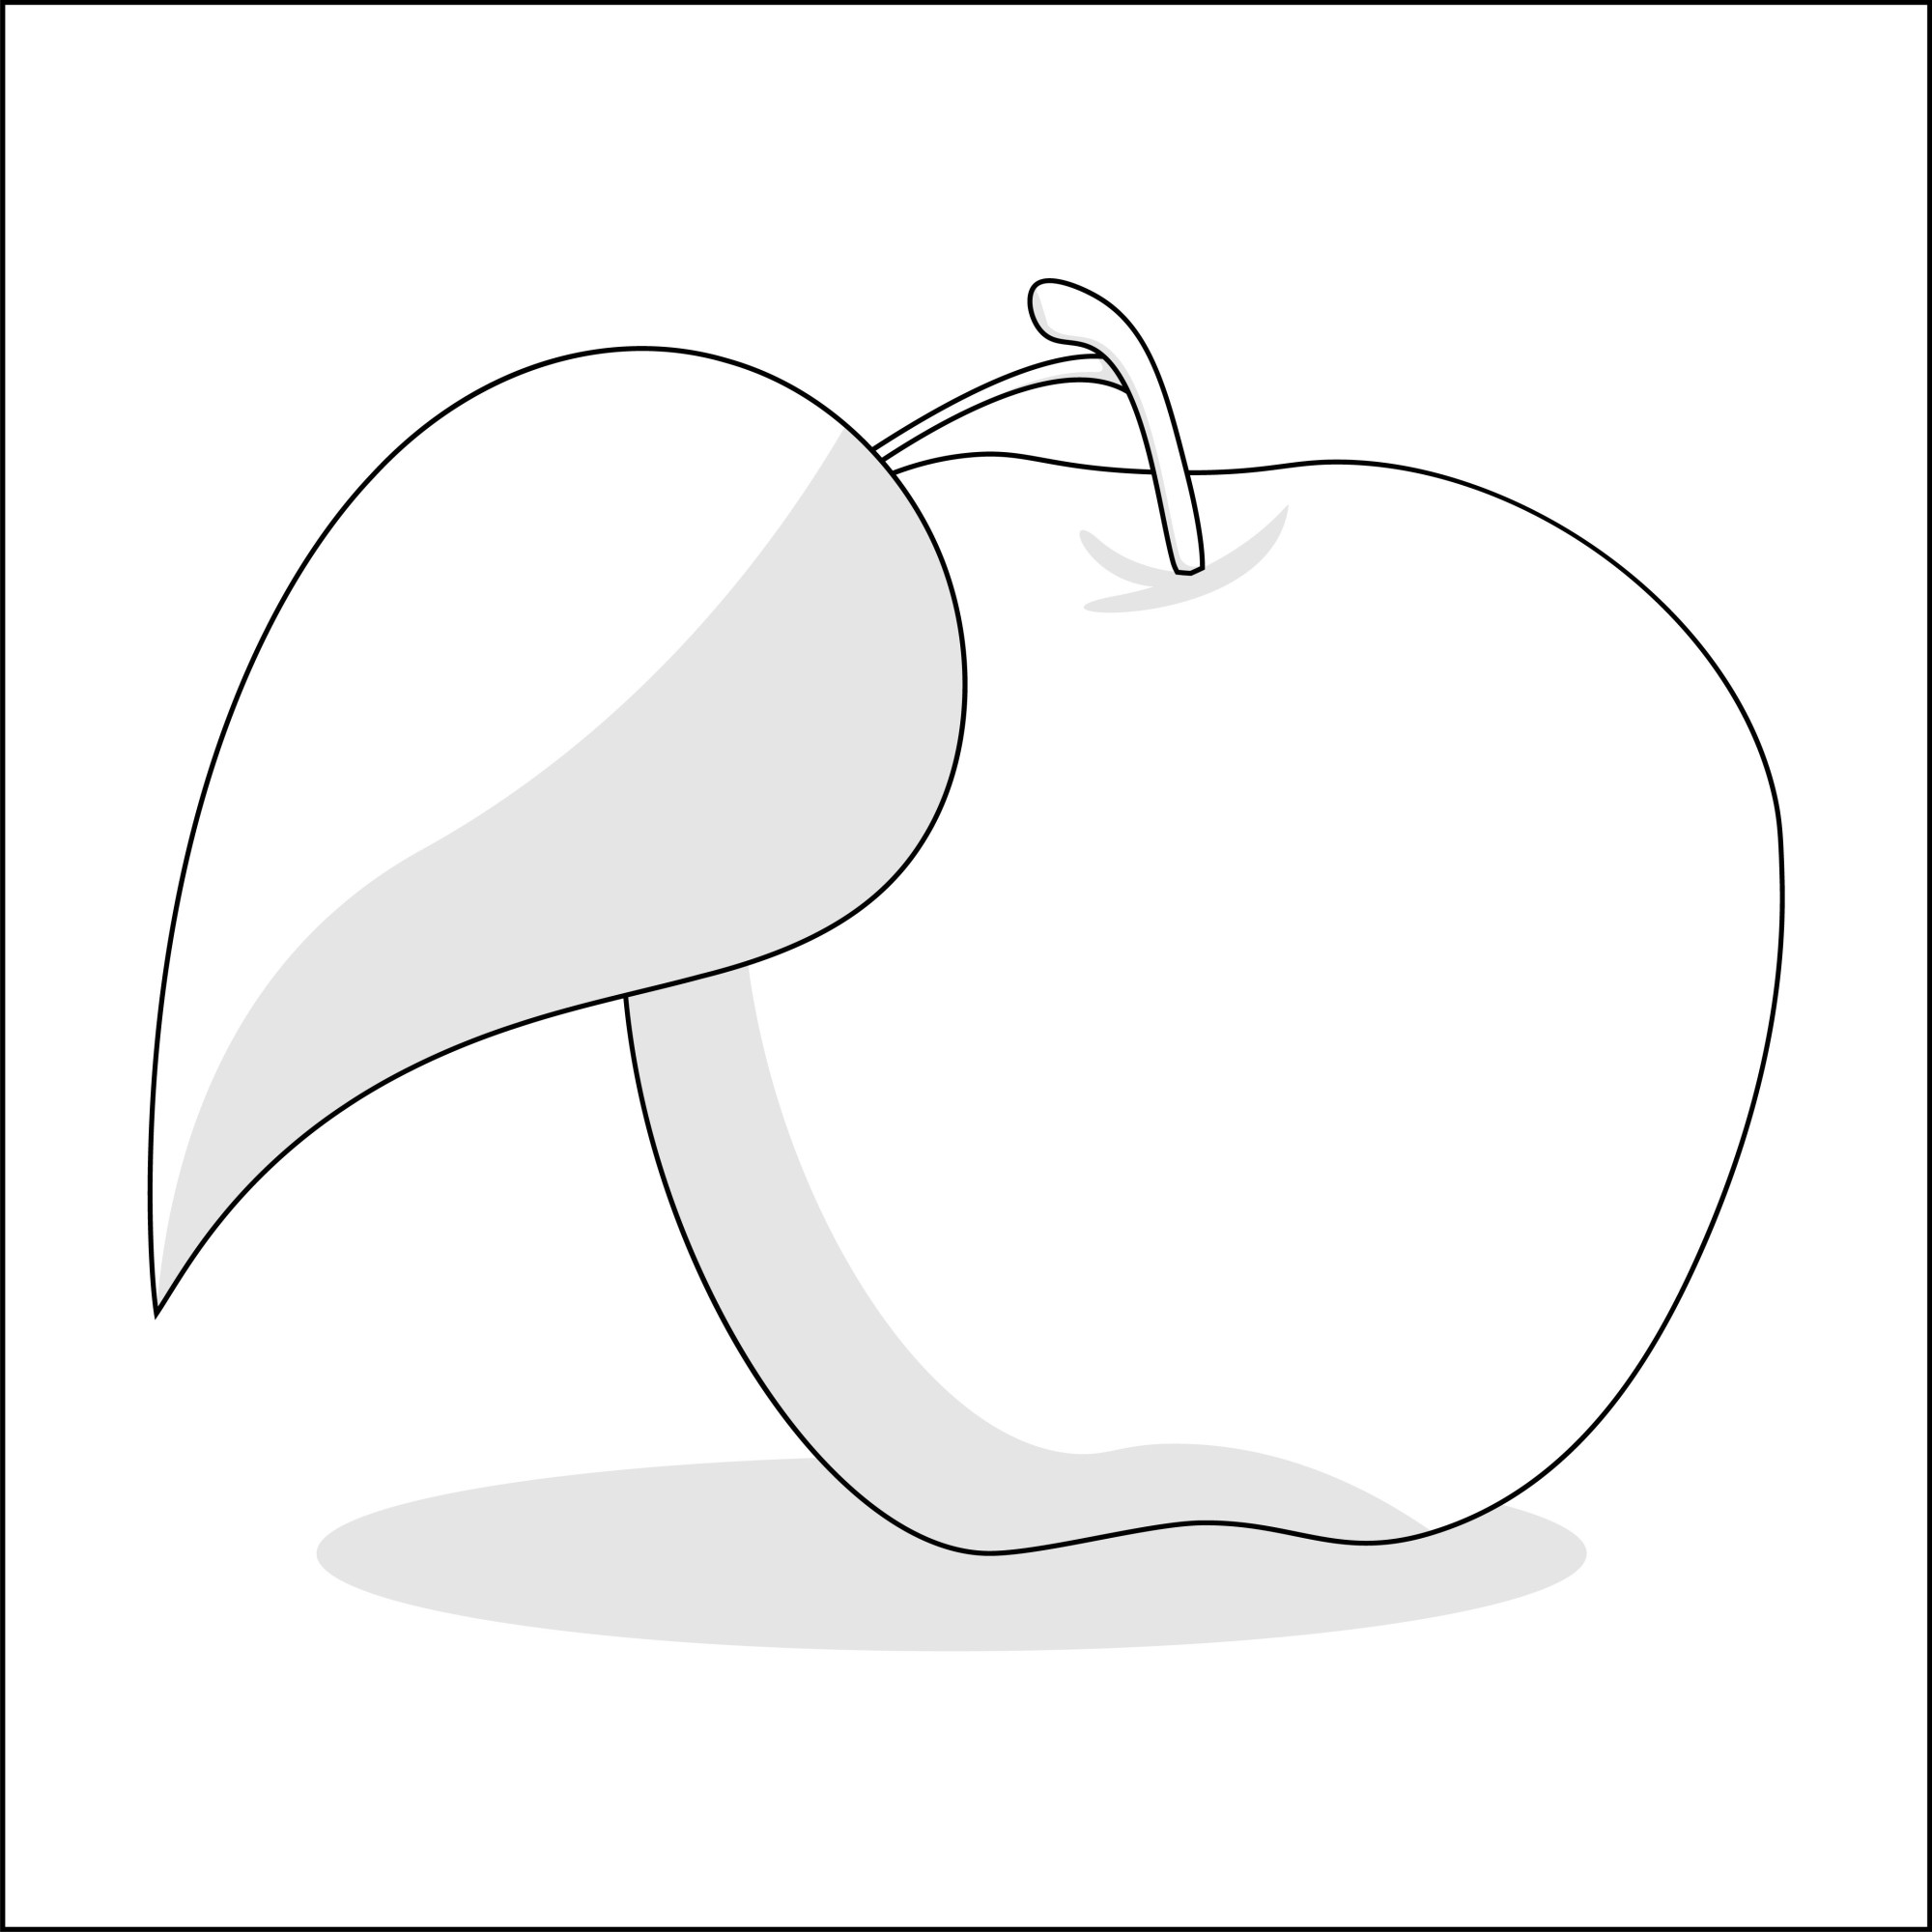 Раскраска для детей: осеннее яблоко с листиком